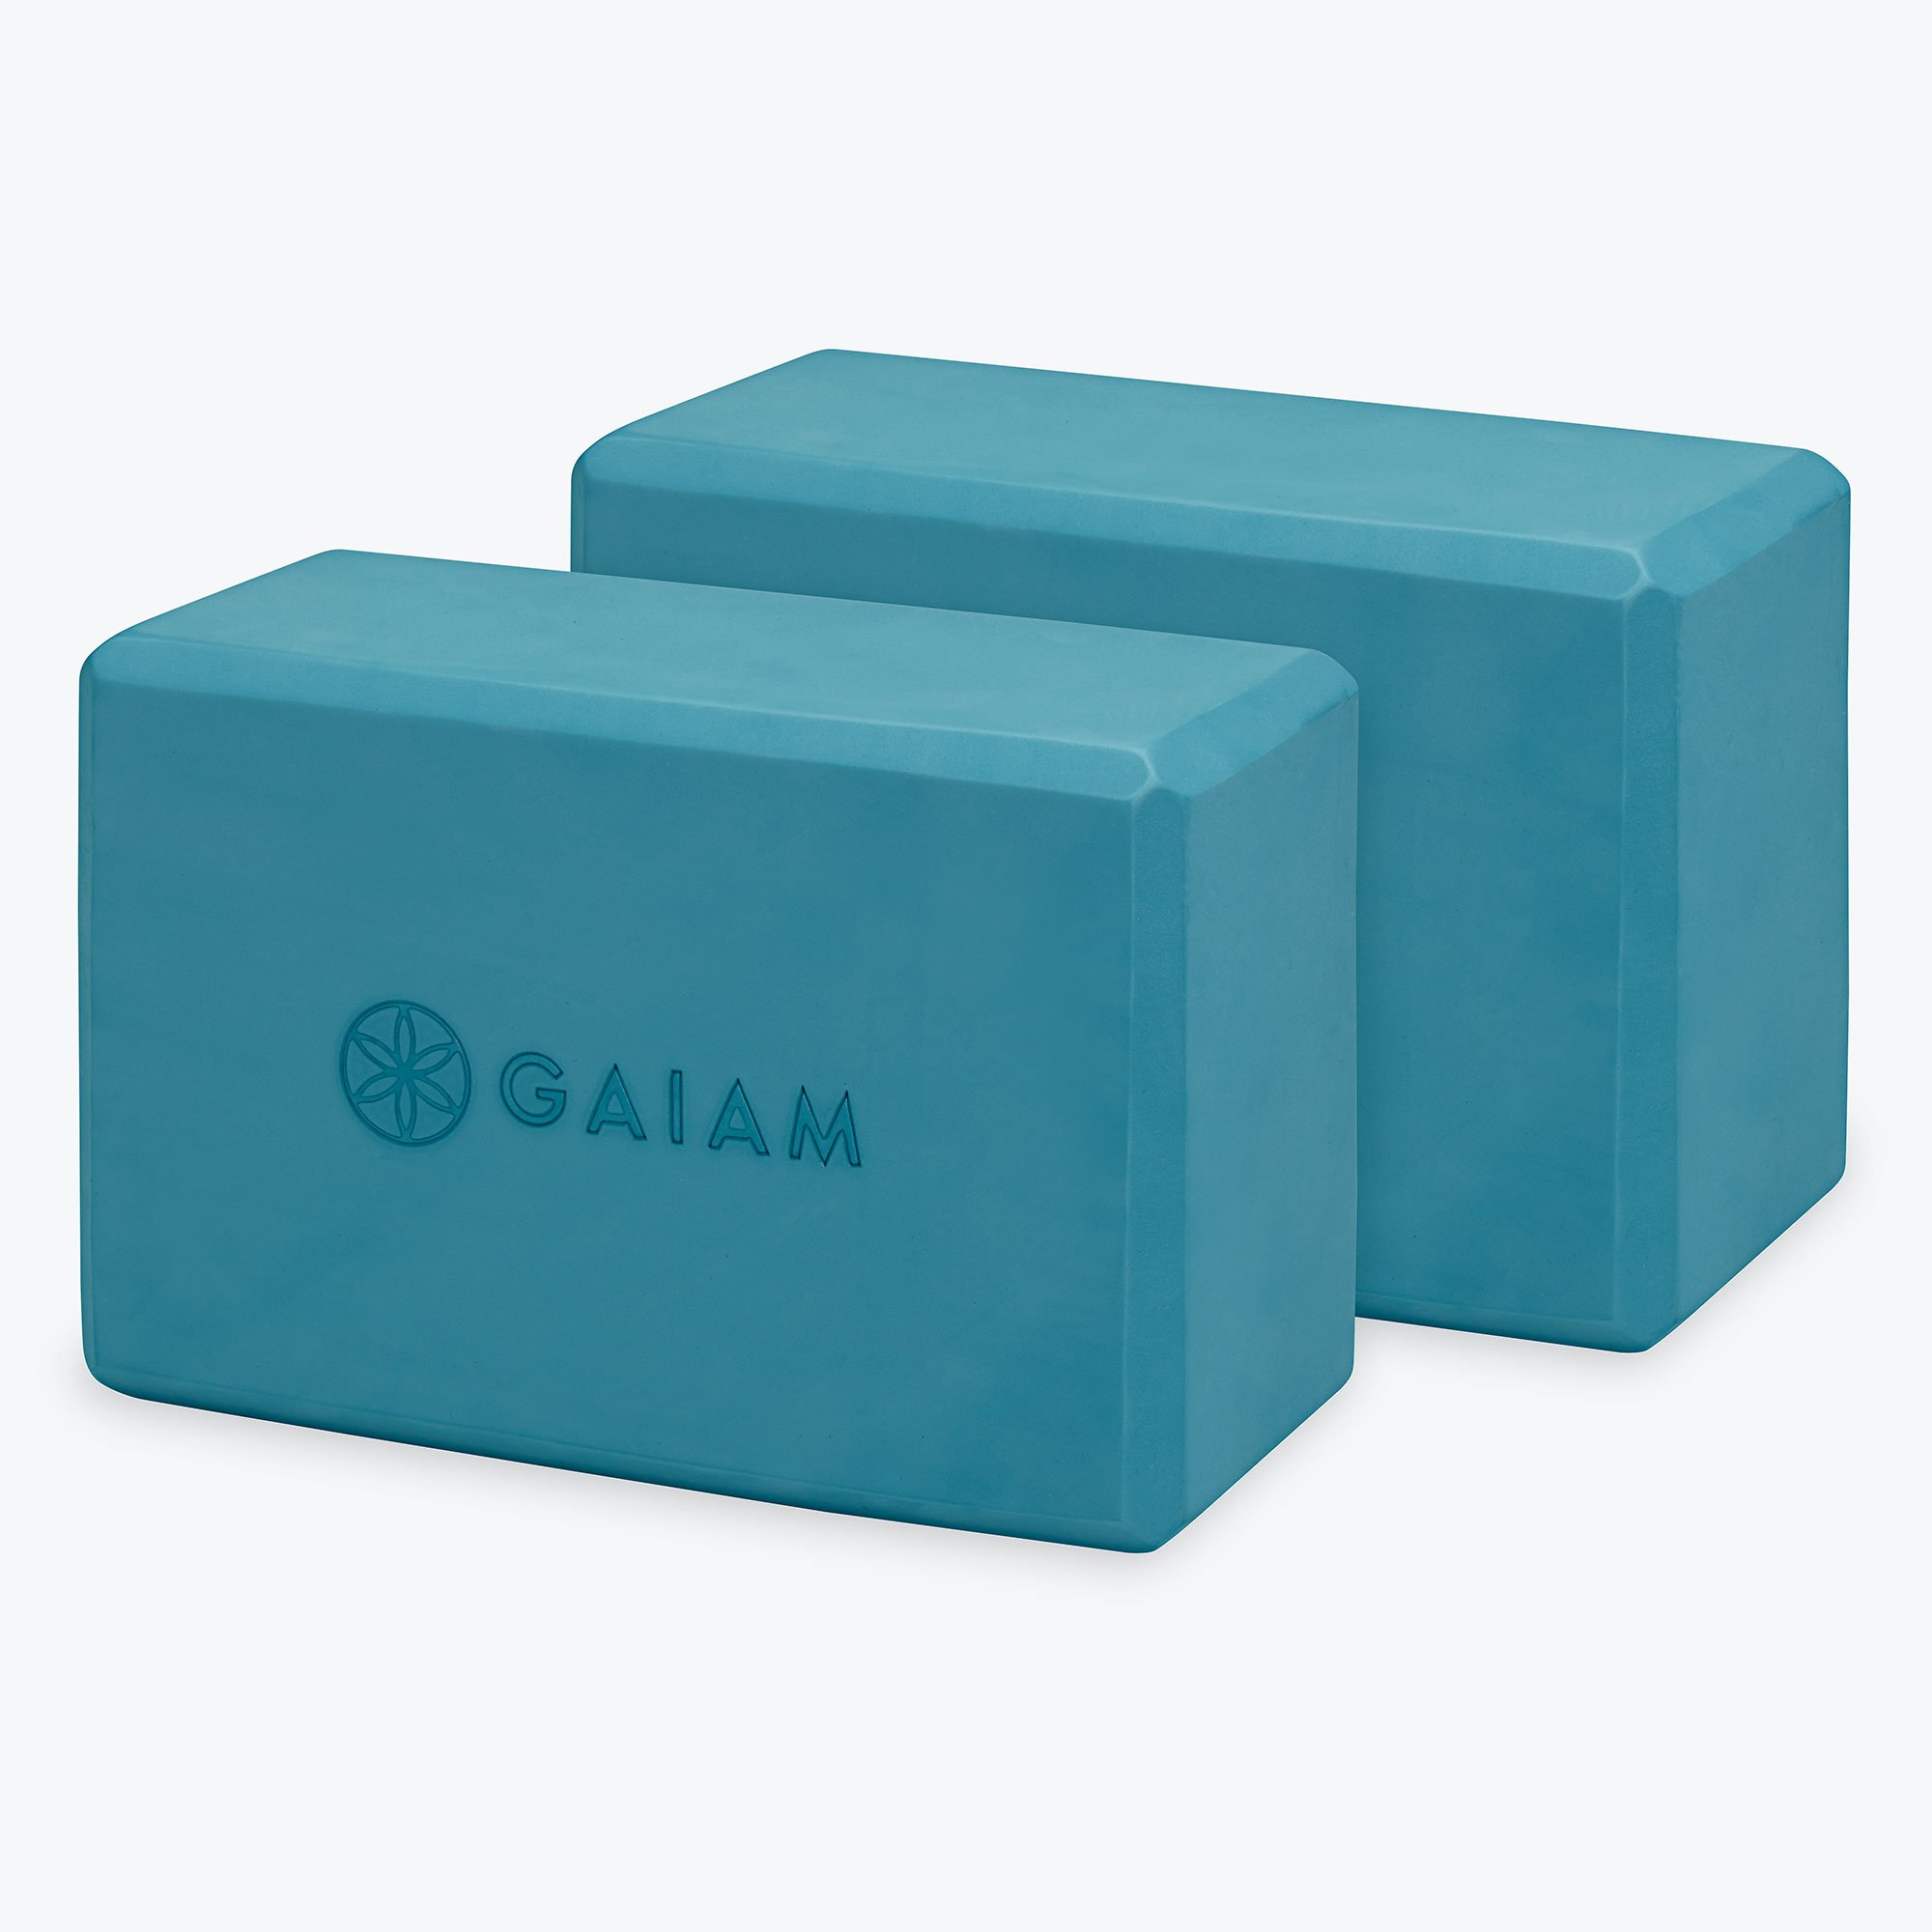 Gaiam Essentials Yoga Blocks,